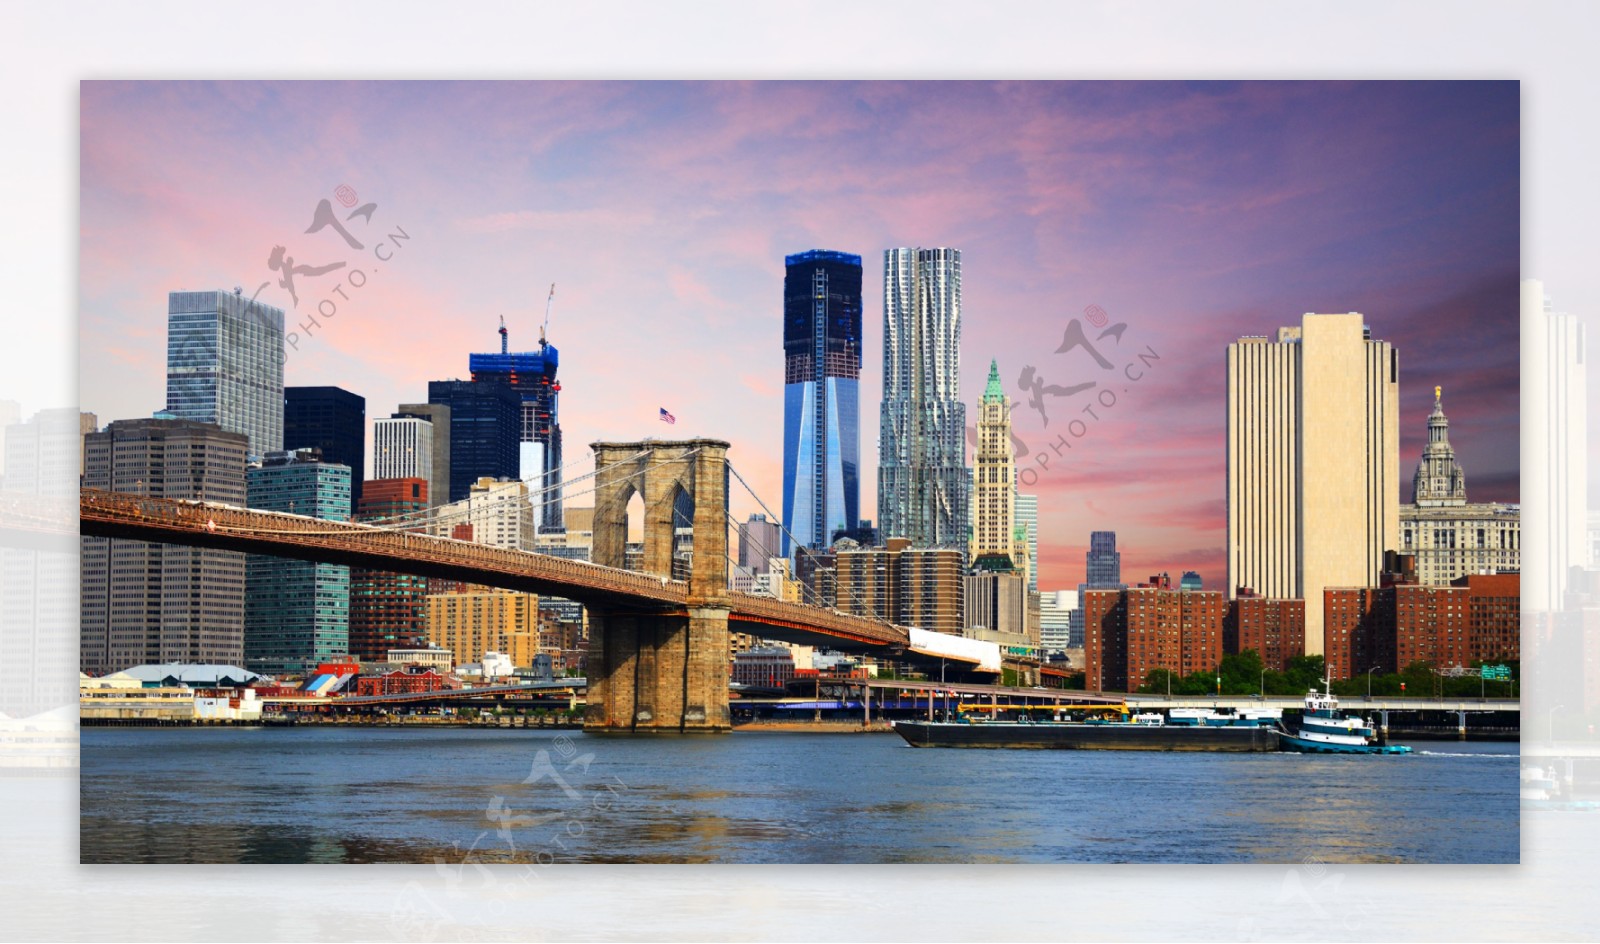 布鲁克林大桥风景图片